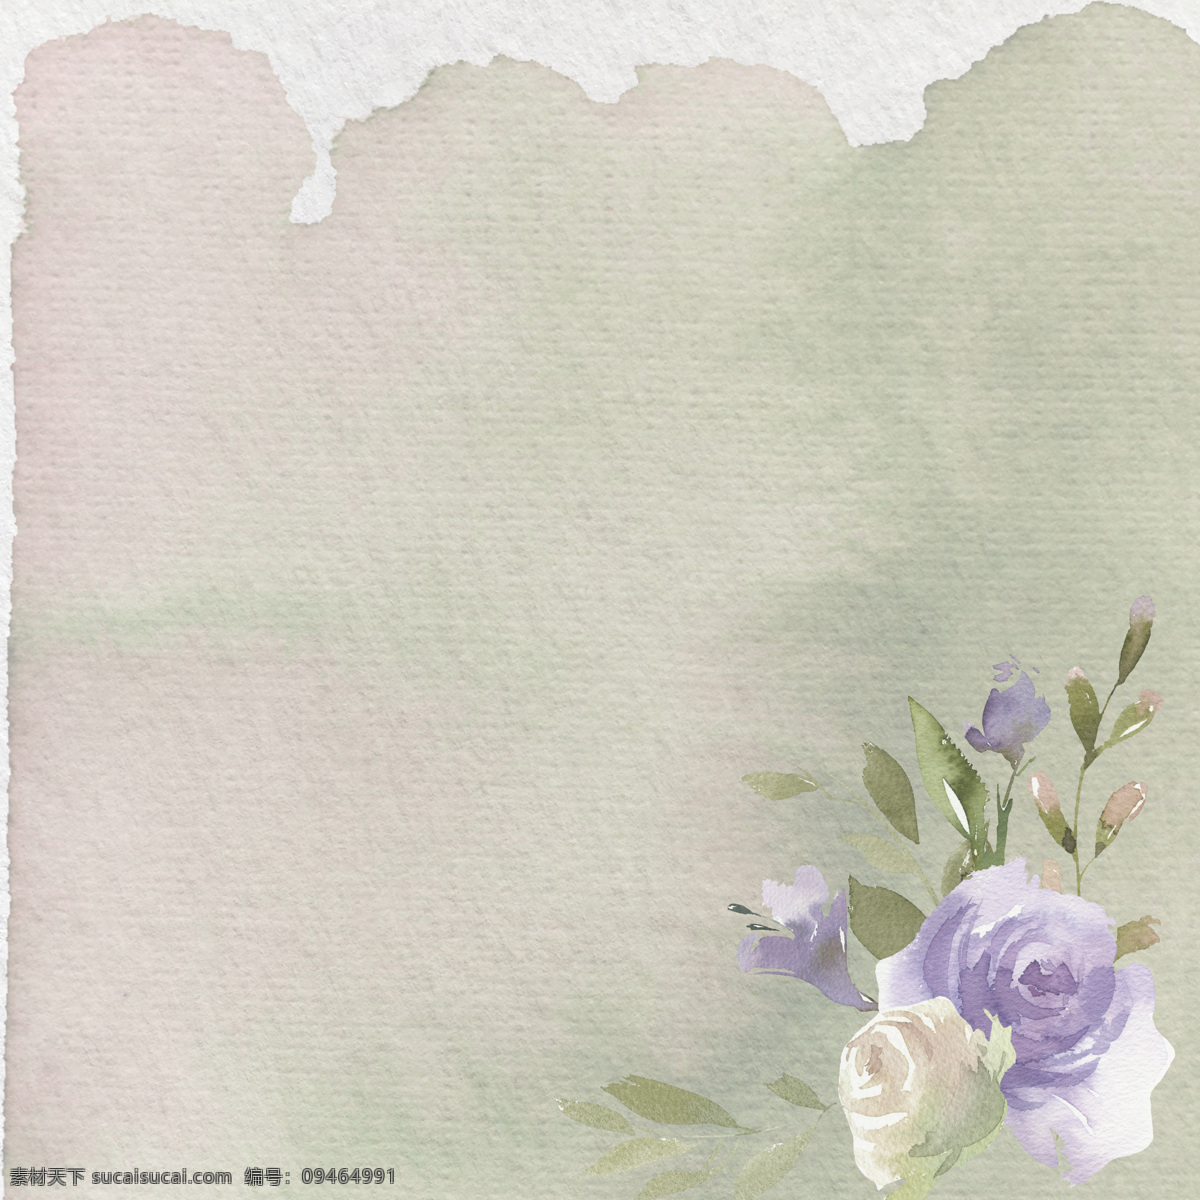 手绘 玫瑰花 牛皮纸 背景 白色 背景素材 淡雅 复古 水彩 渲染 叶子 紫色